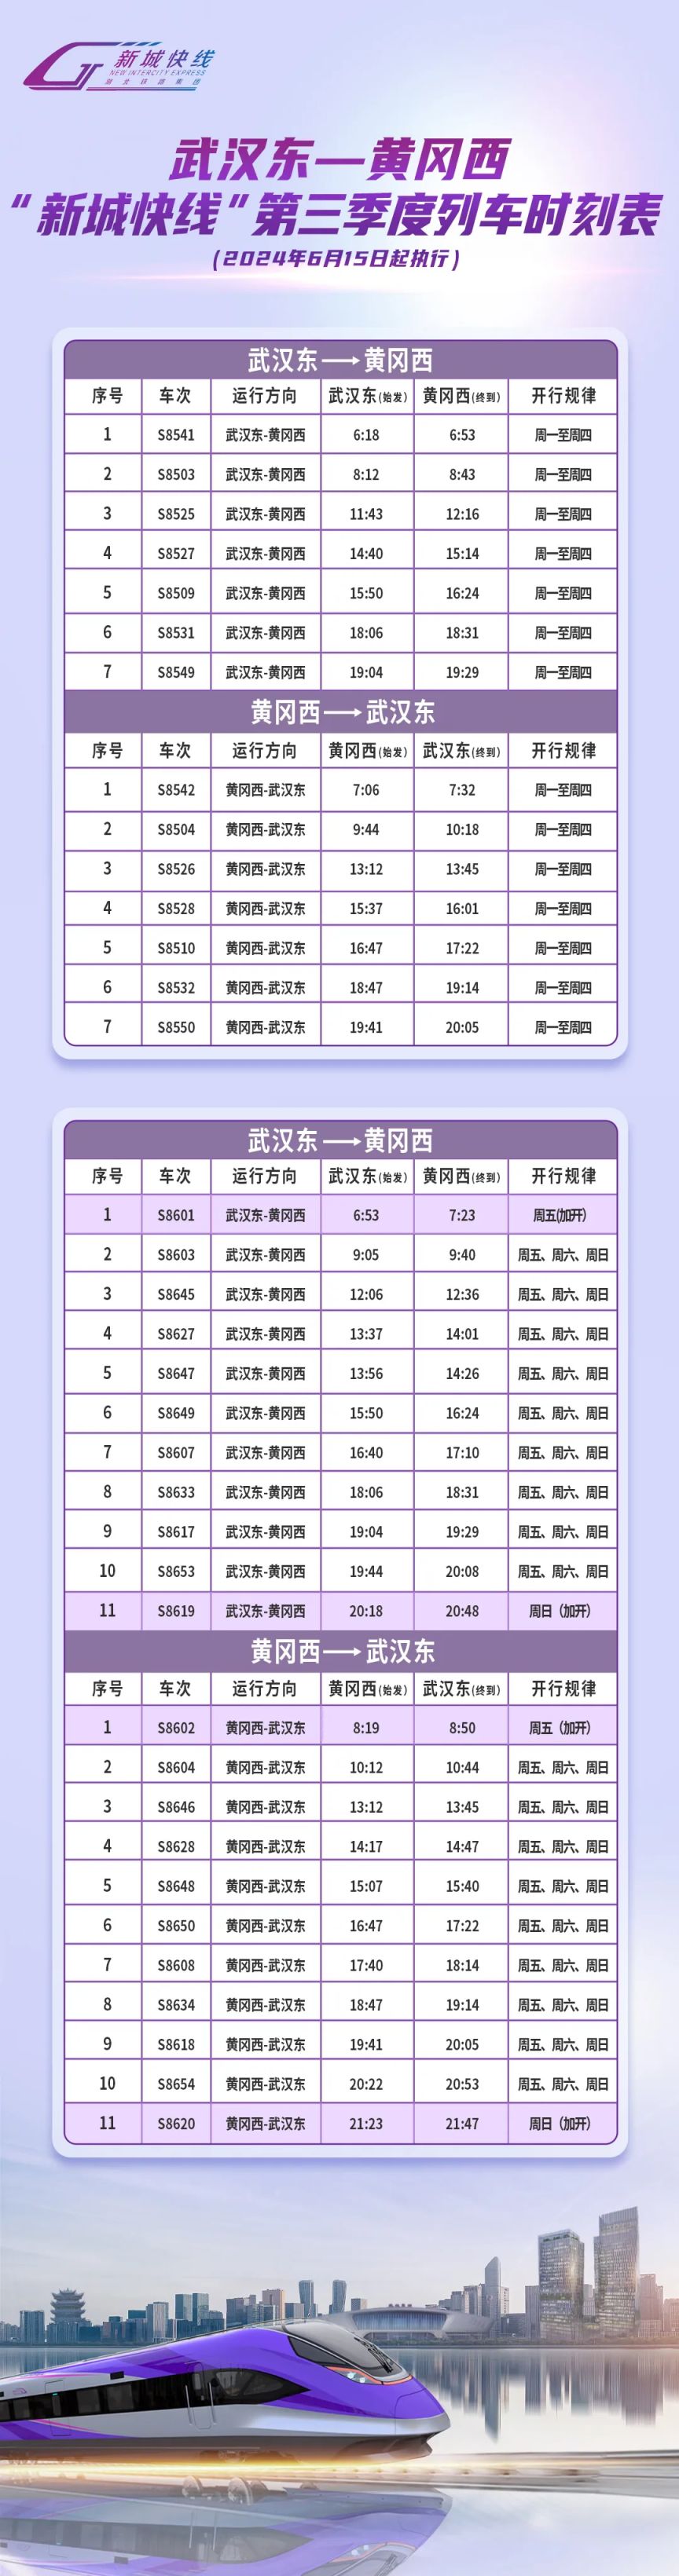 武鄂黄黄新城快线第三季度列车时刻表